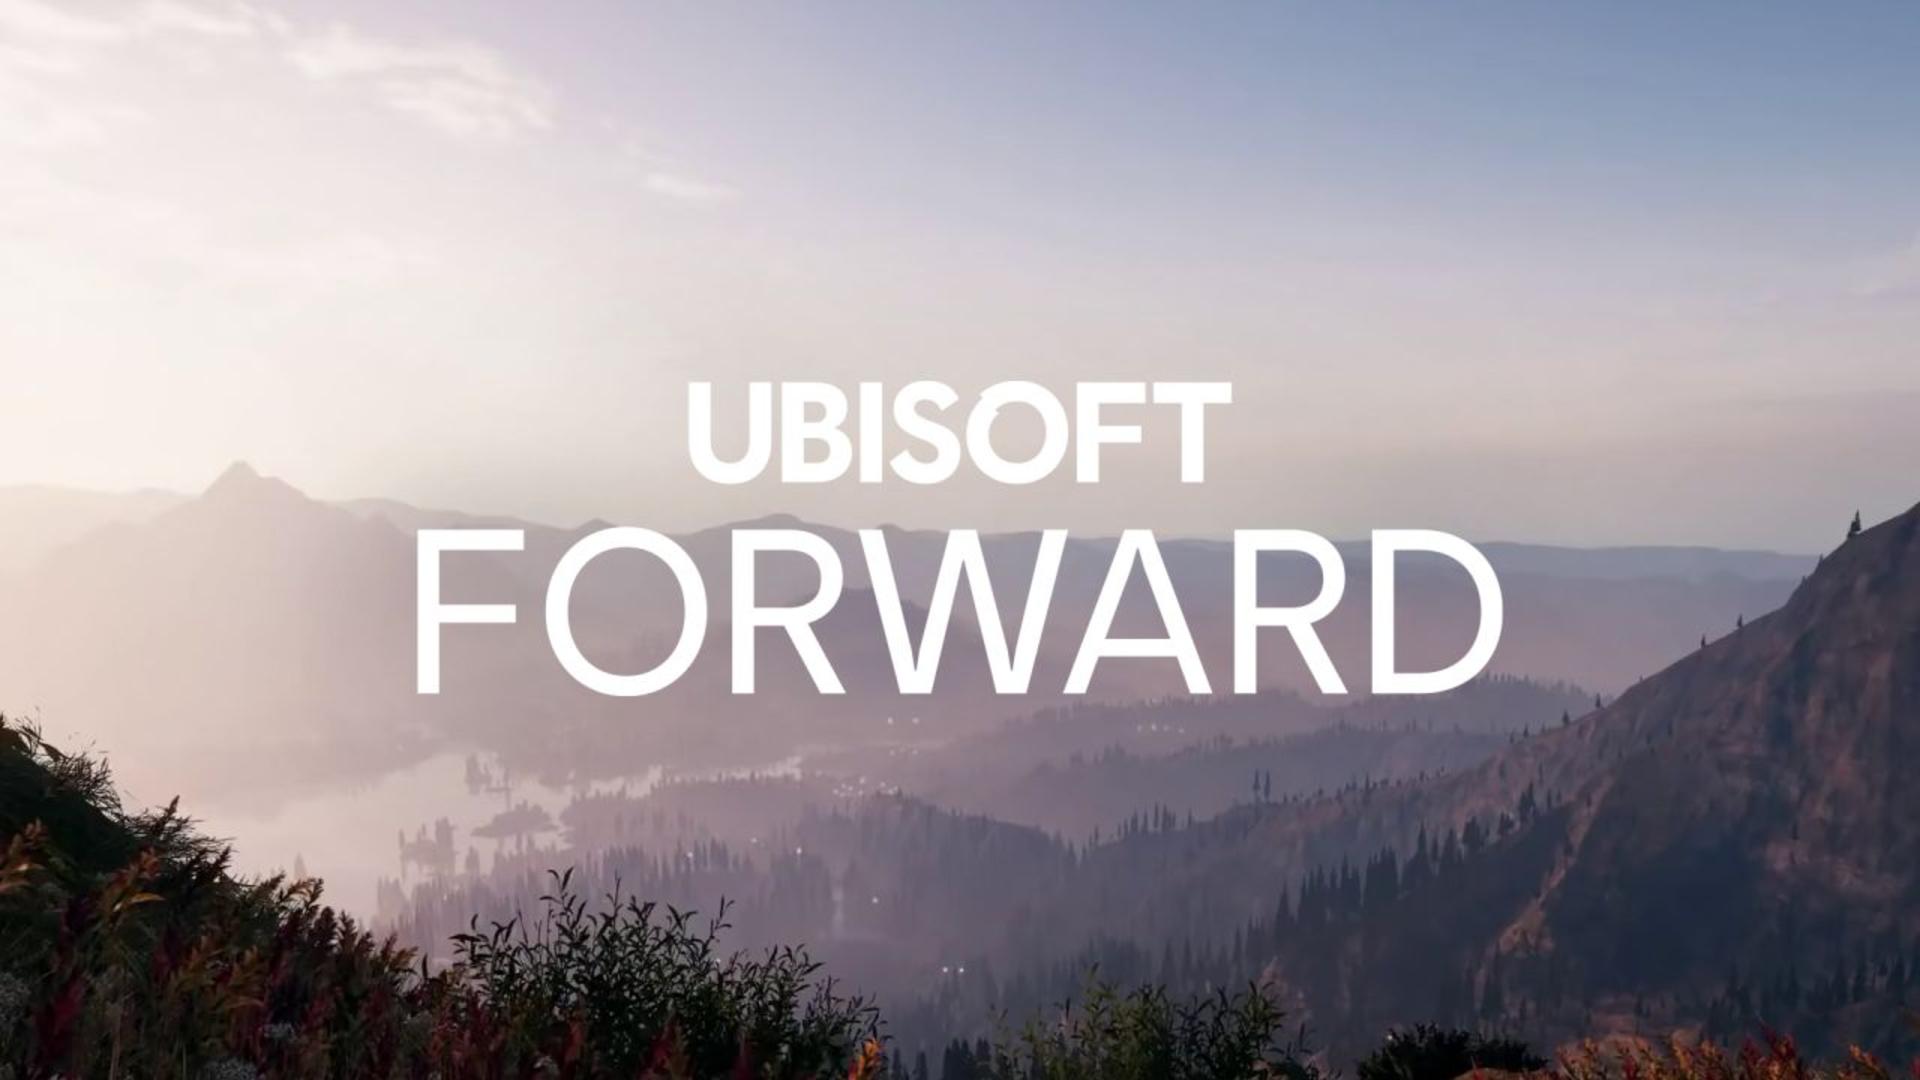 Ubisoft forward será o evento online em julho | f19f21a1 ubisoft forward | análises | ubisoft forward análises